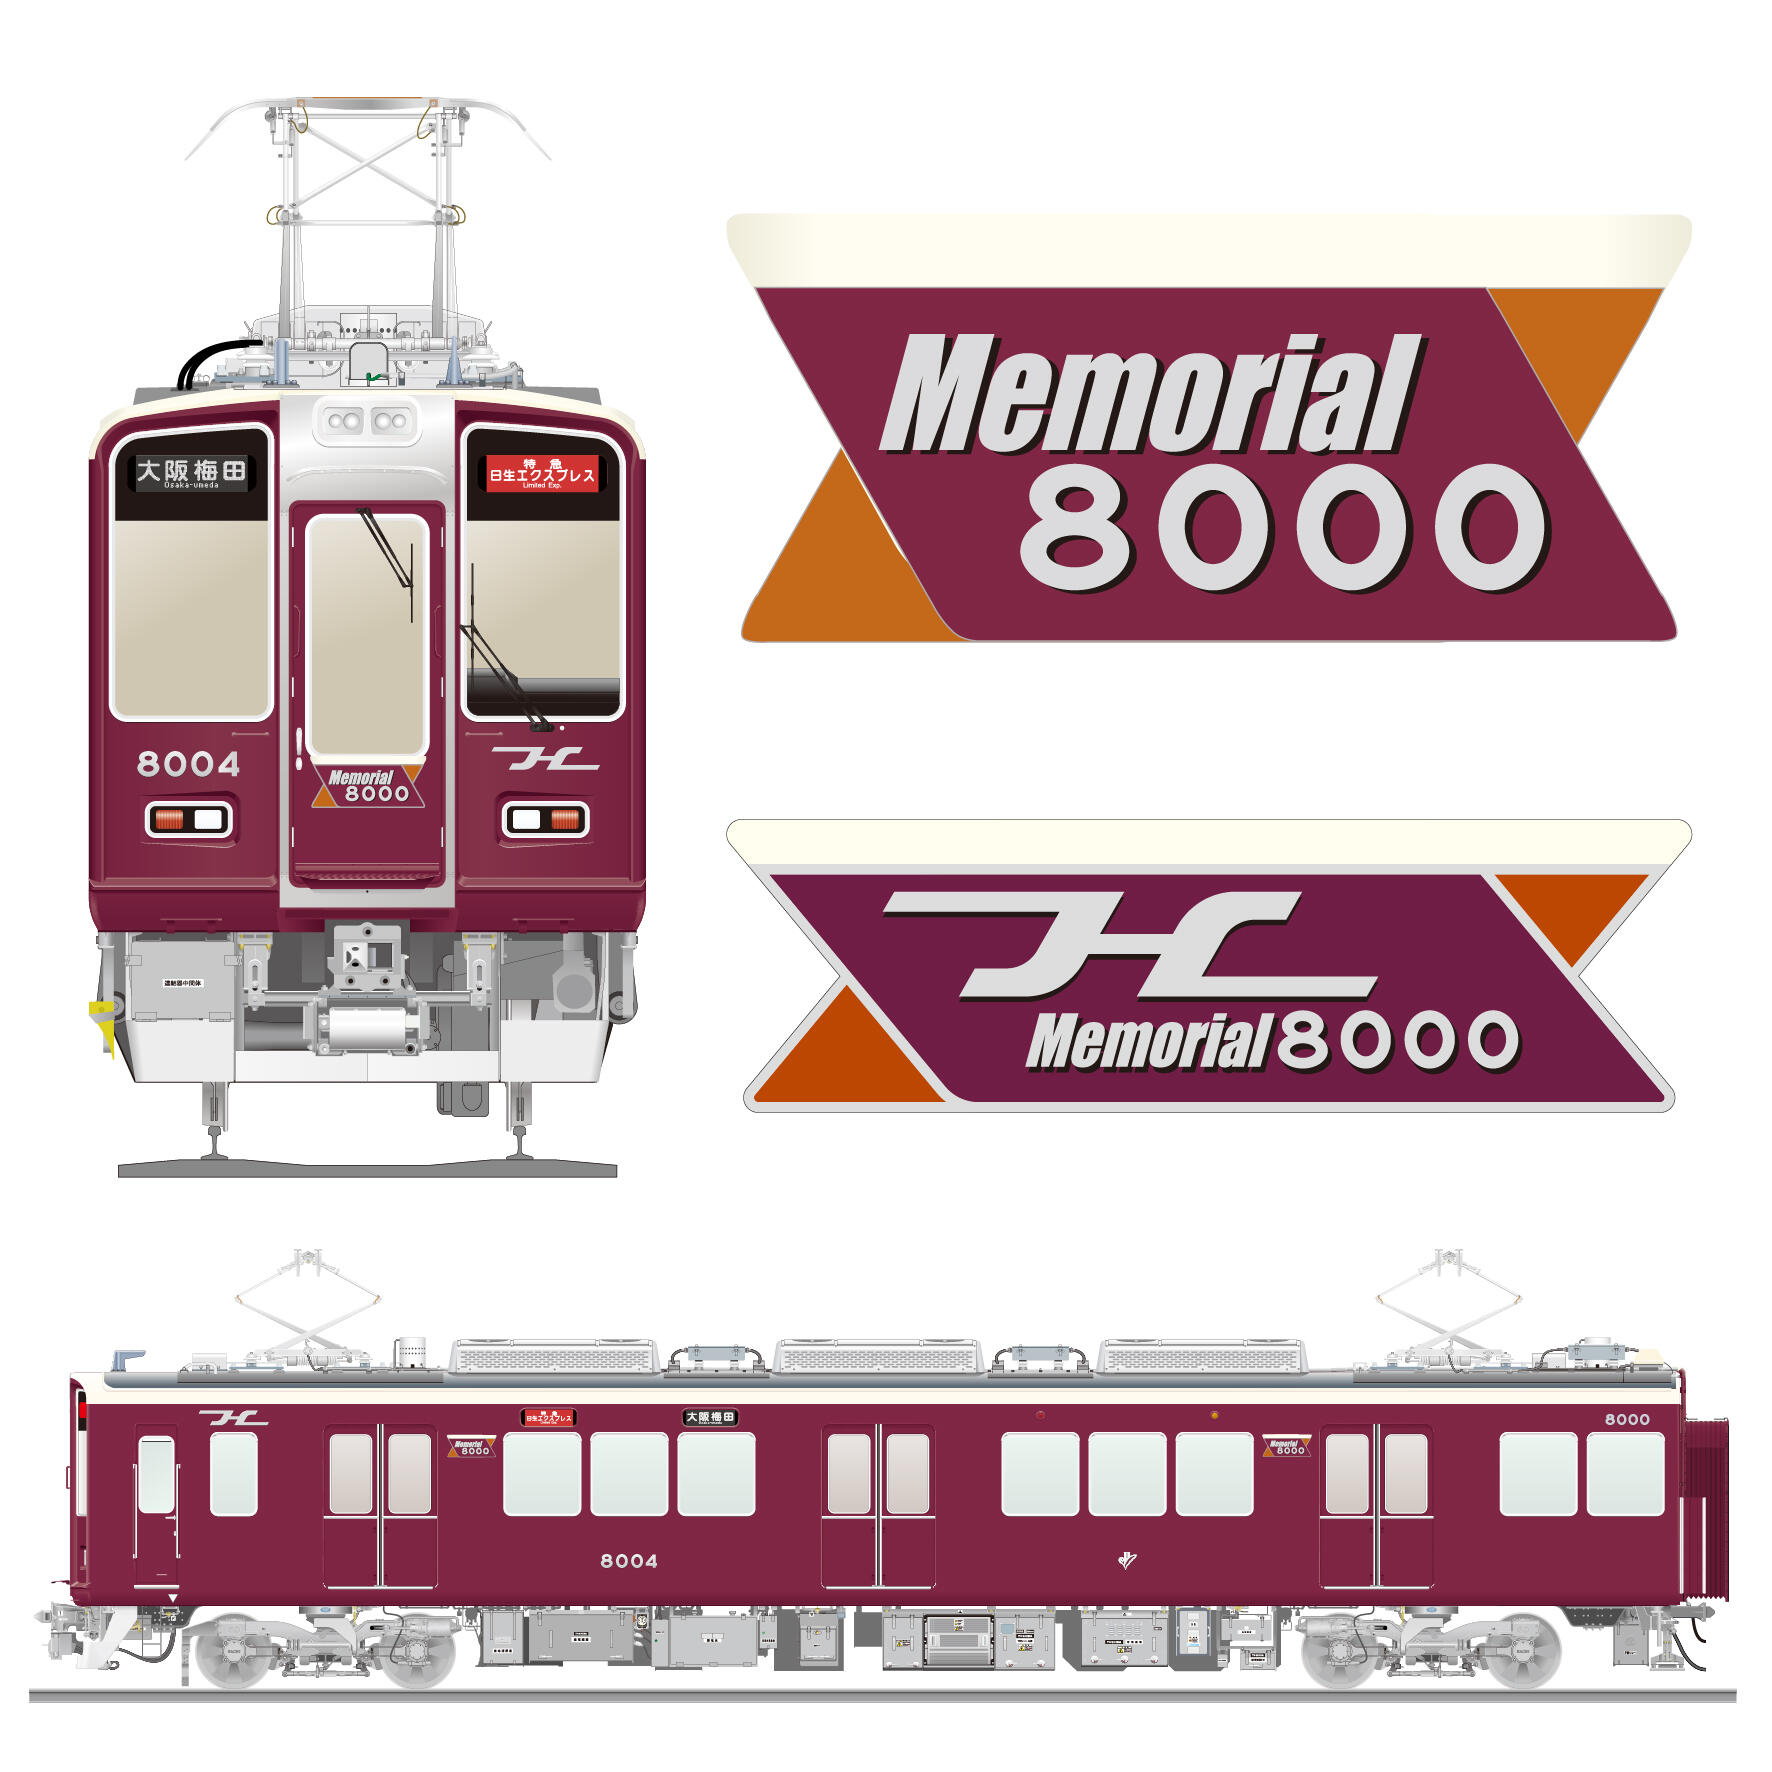 「Memorial8000」(宝塚線所属C#8004×8R)の運行を開始します。